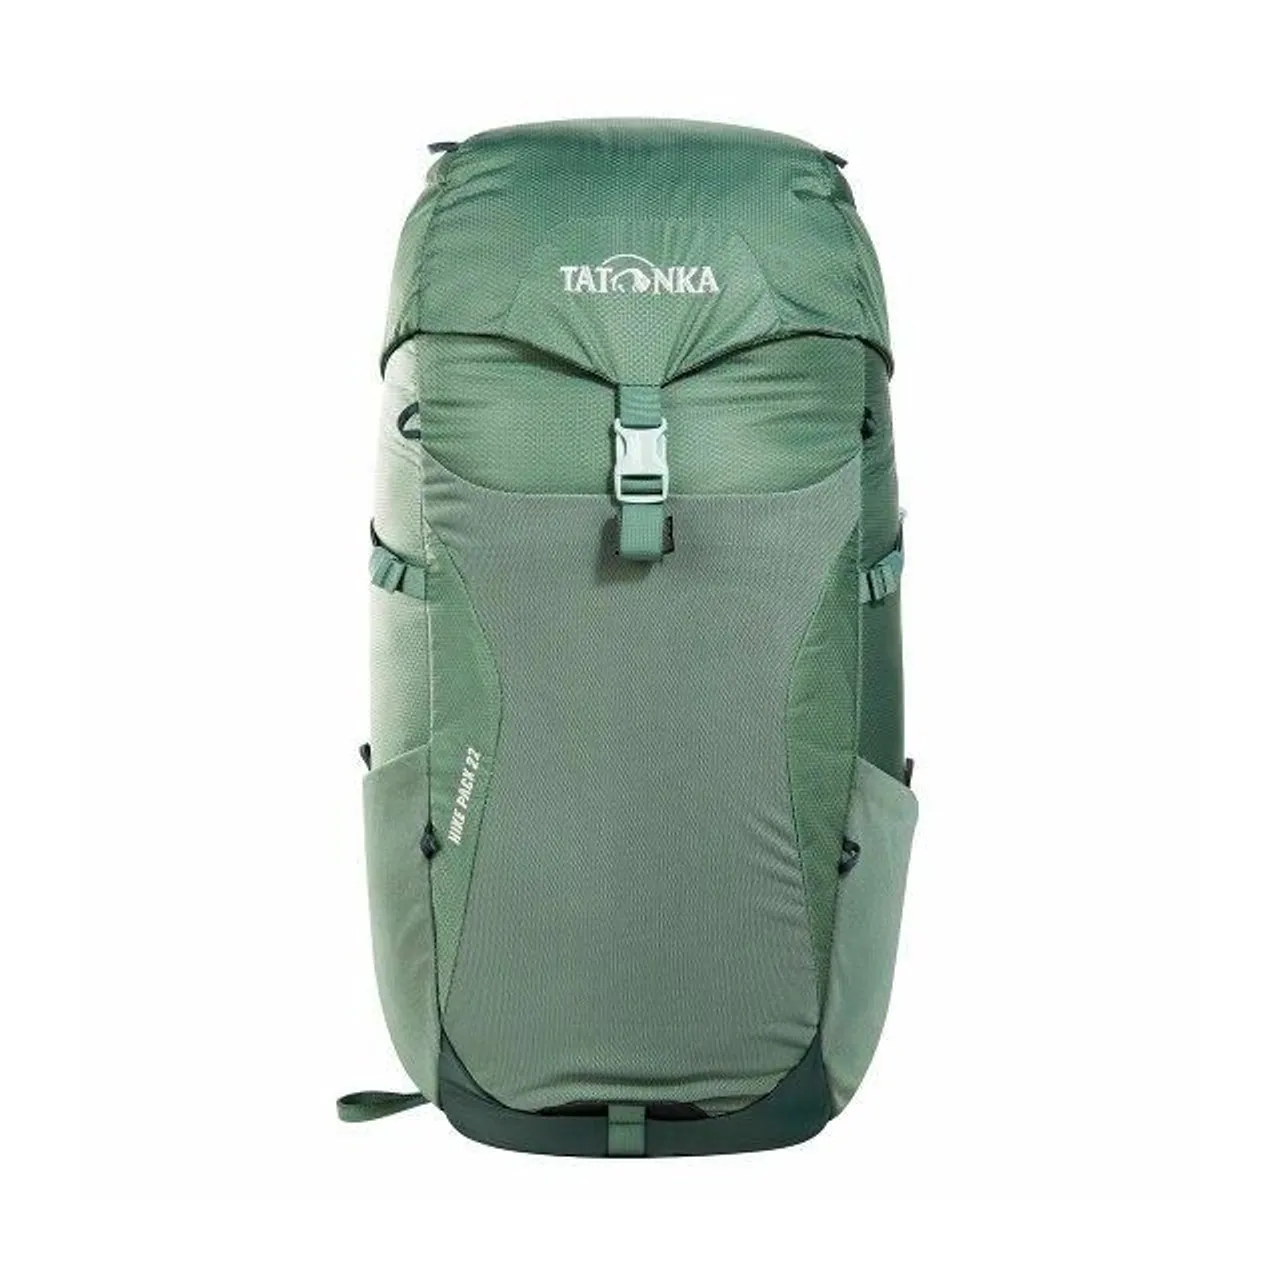 Tatonka Hike Pack Rucksack 50 cm sage green